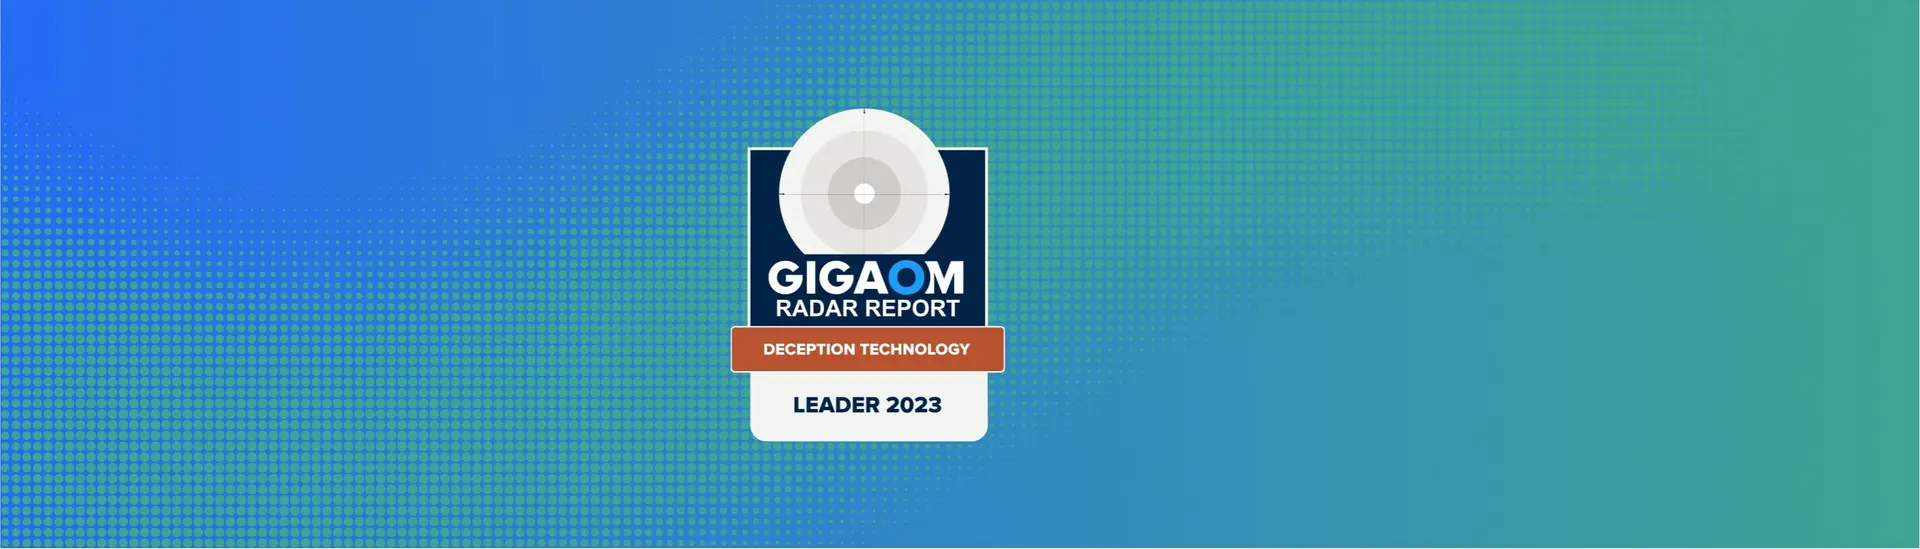 zscaler-industry-leader-deception-technology-gigaom-2023-desktop